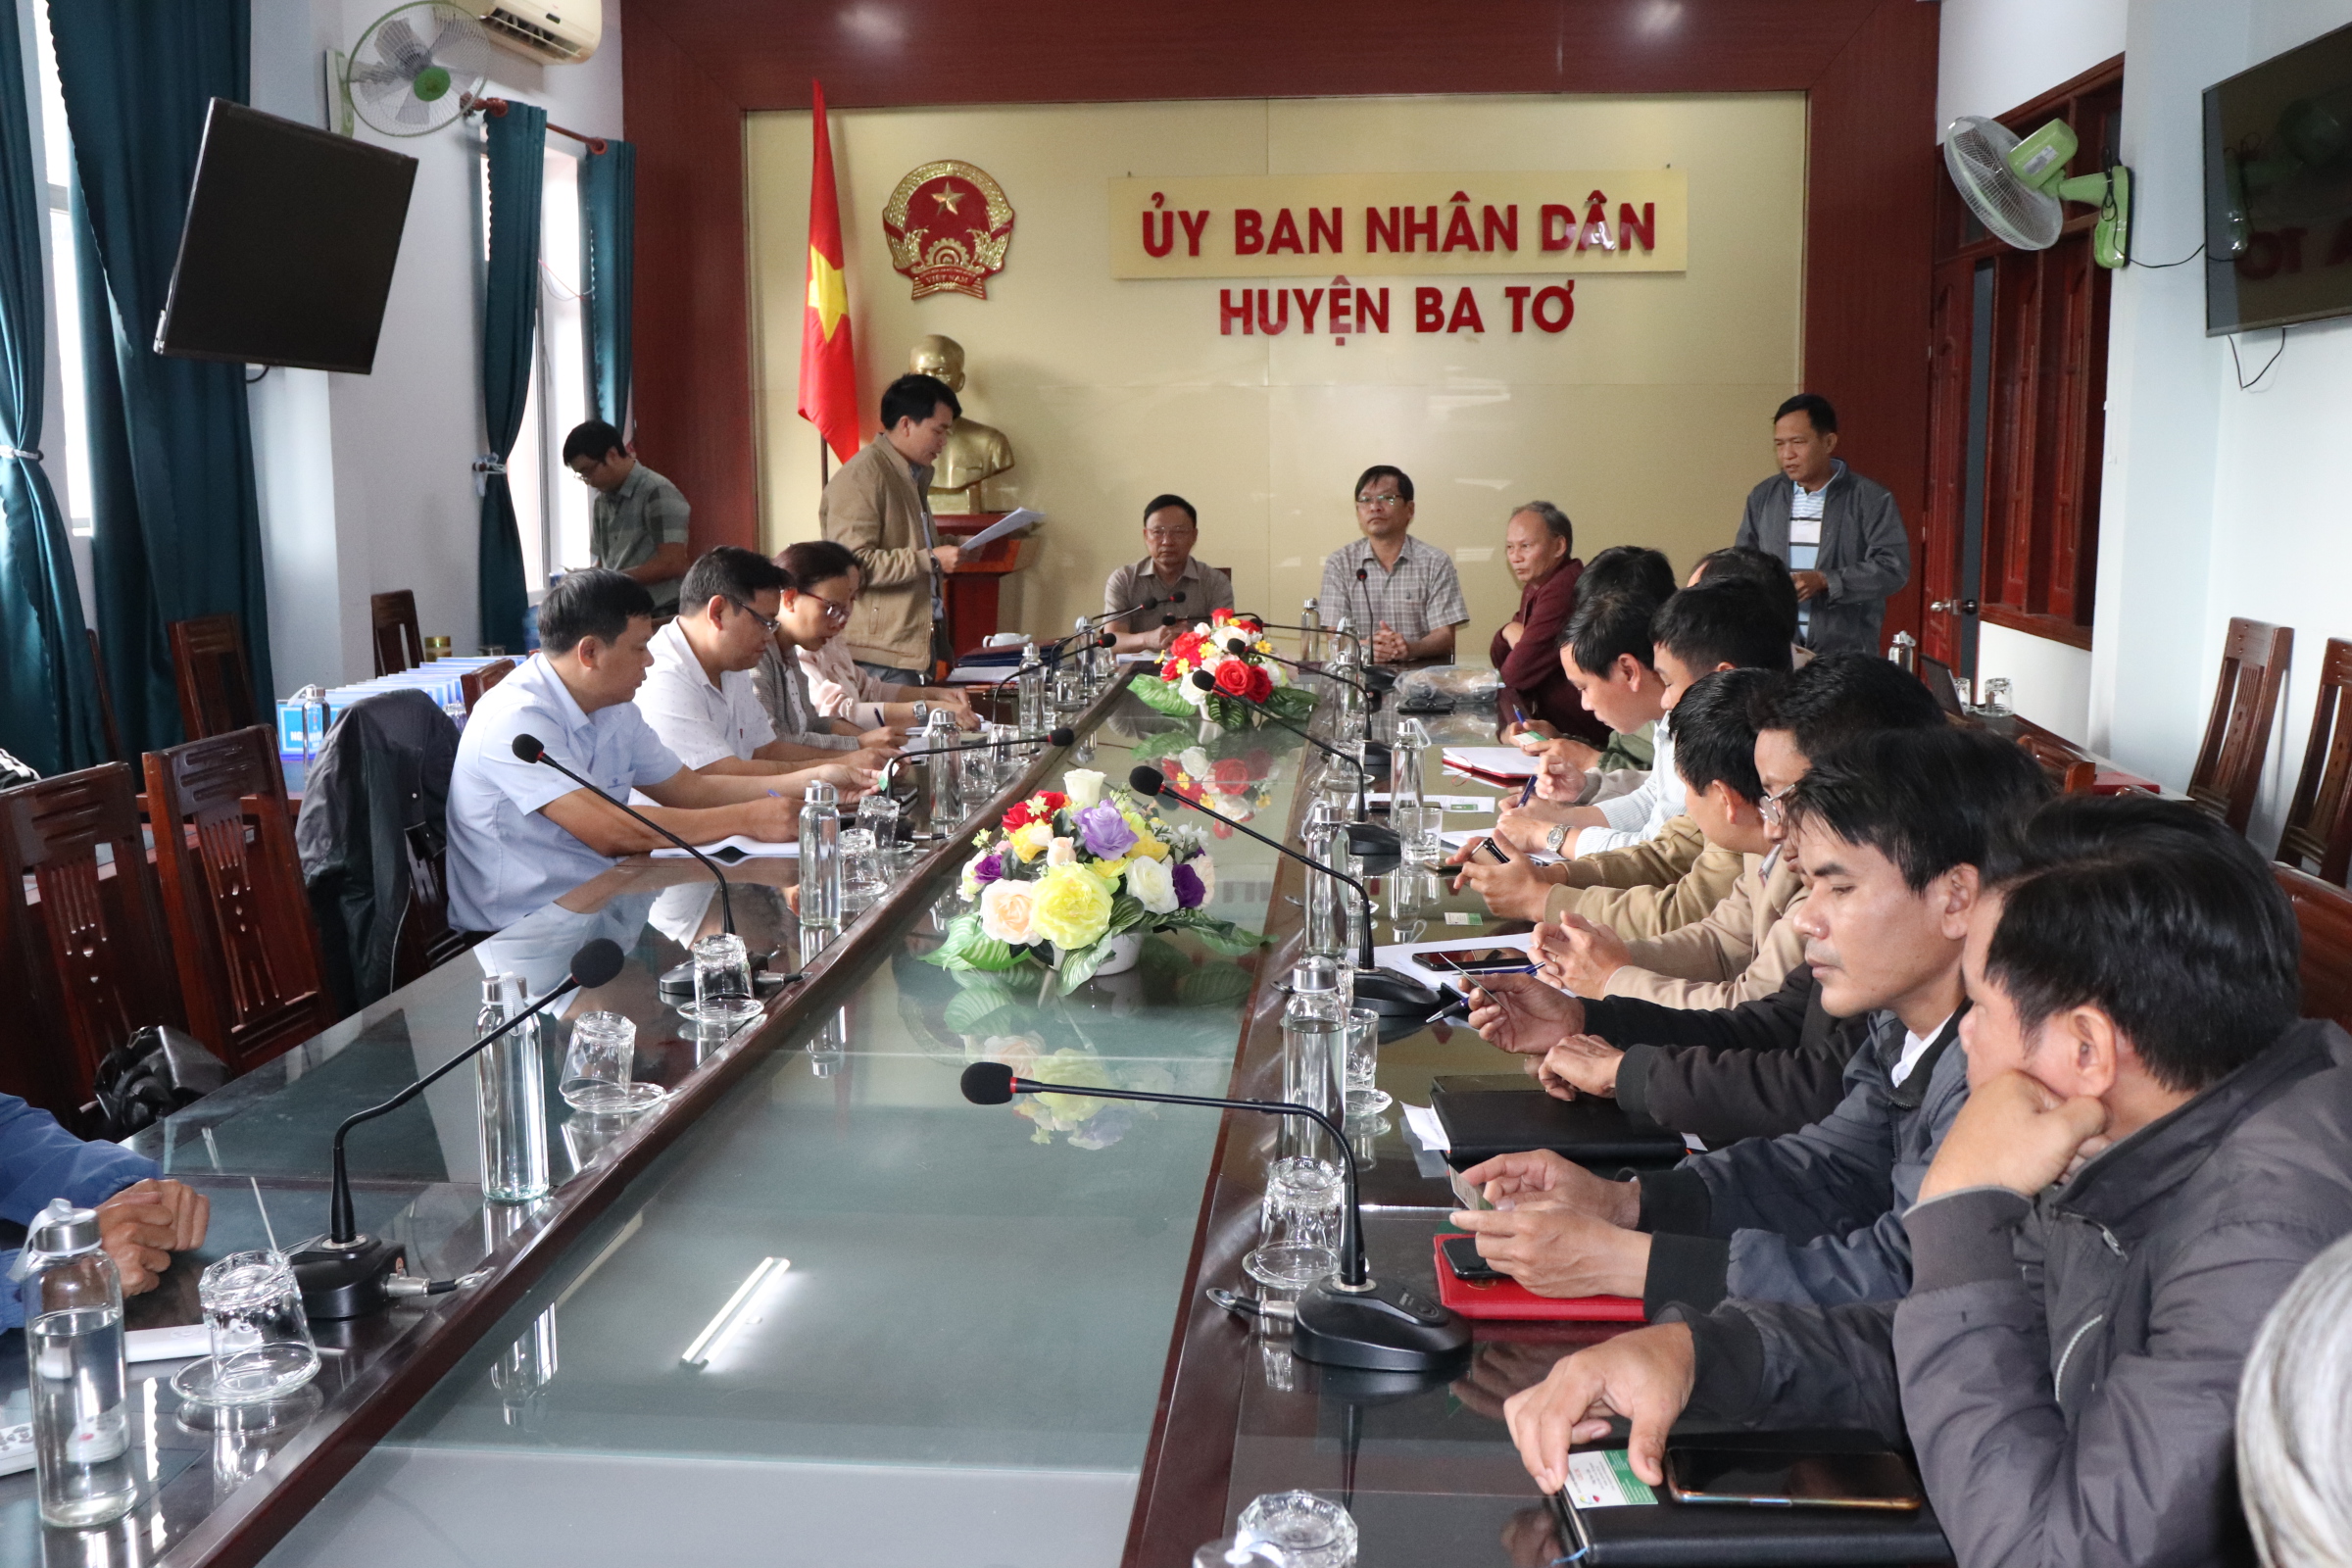 Chủ tịch UBND huyện Ba Tơ làm việc với Ban Dân tộc tỉnh và Công ty G.O.C về việc khảo sát đầu tư, triển khai dự án liên kết chuỗi tre lấy măng trên địa bàn huyện Ba Tơ